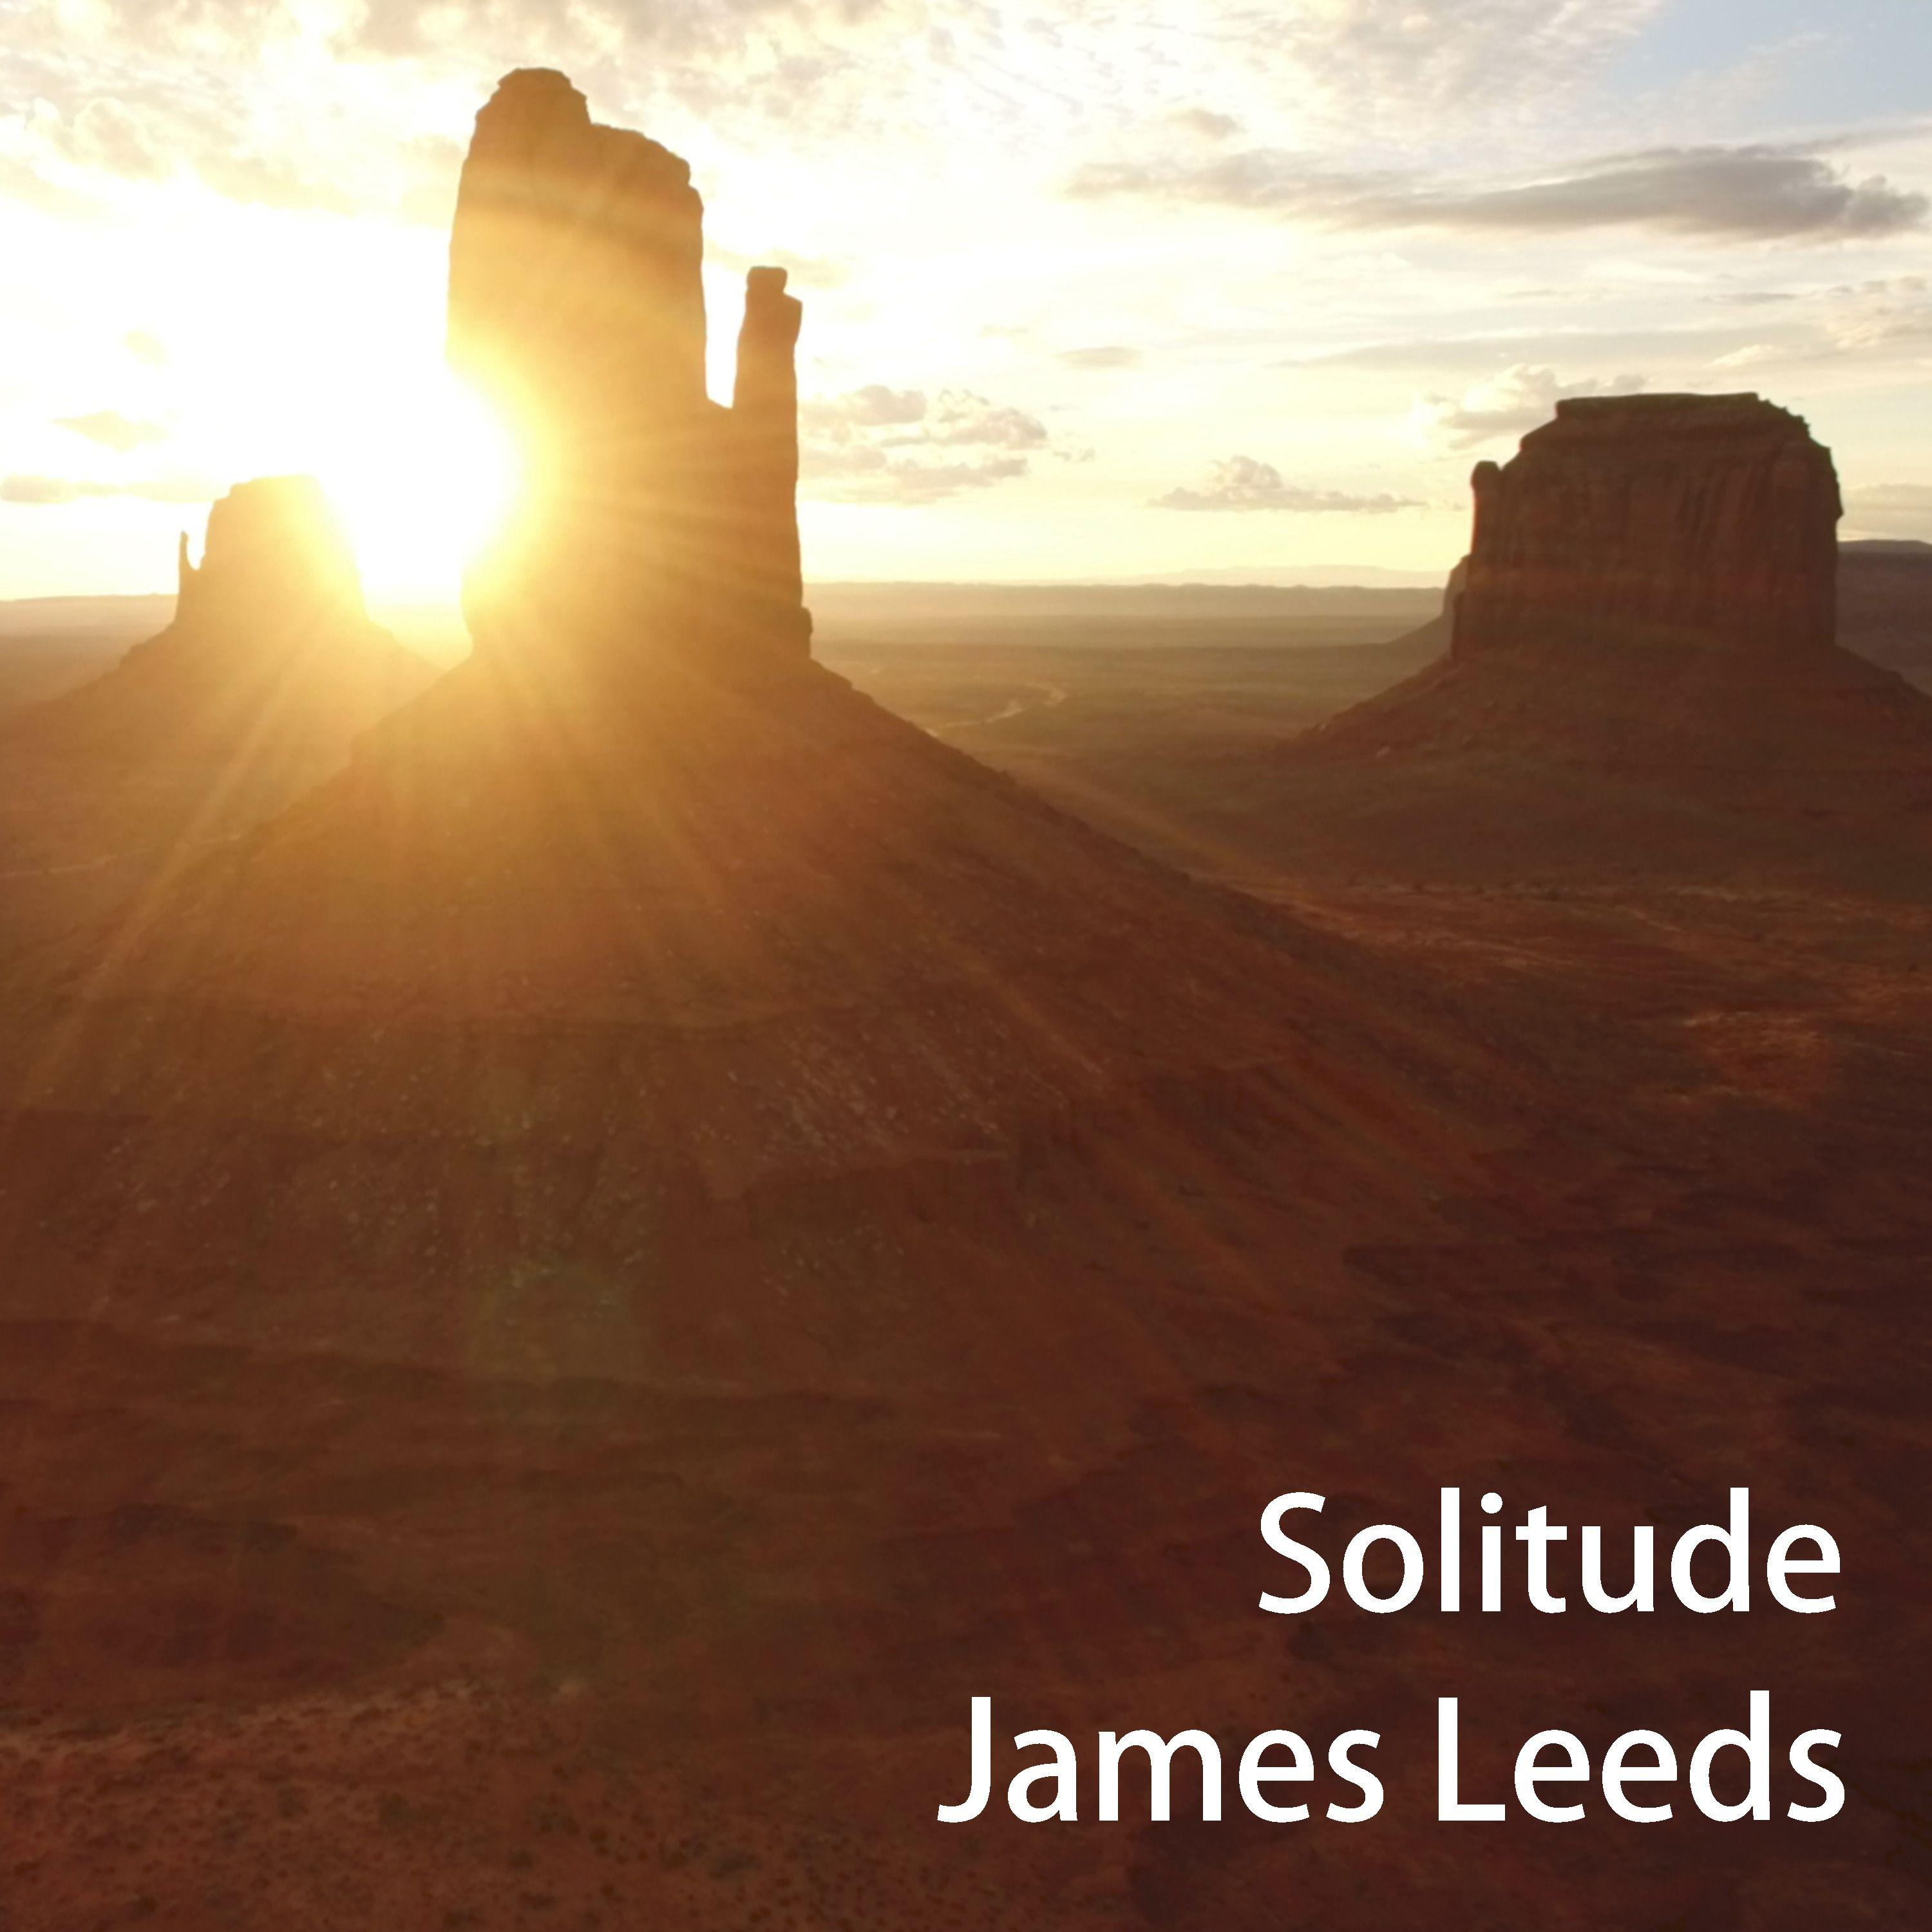 James Leeds - Solitude